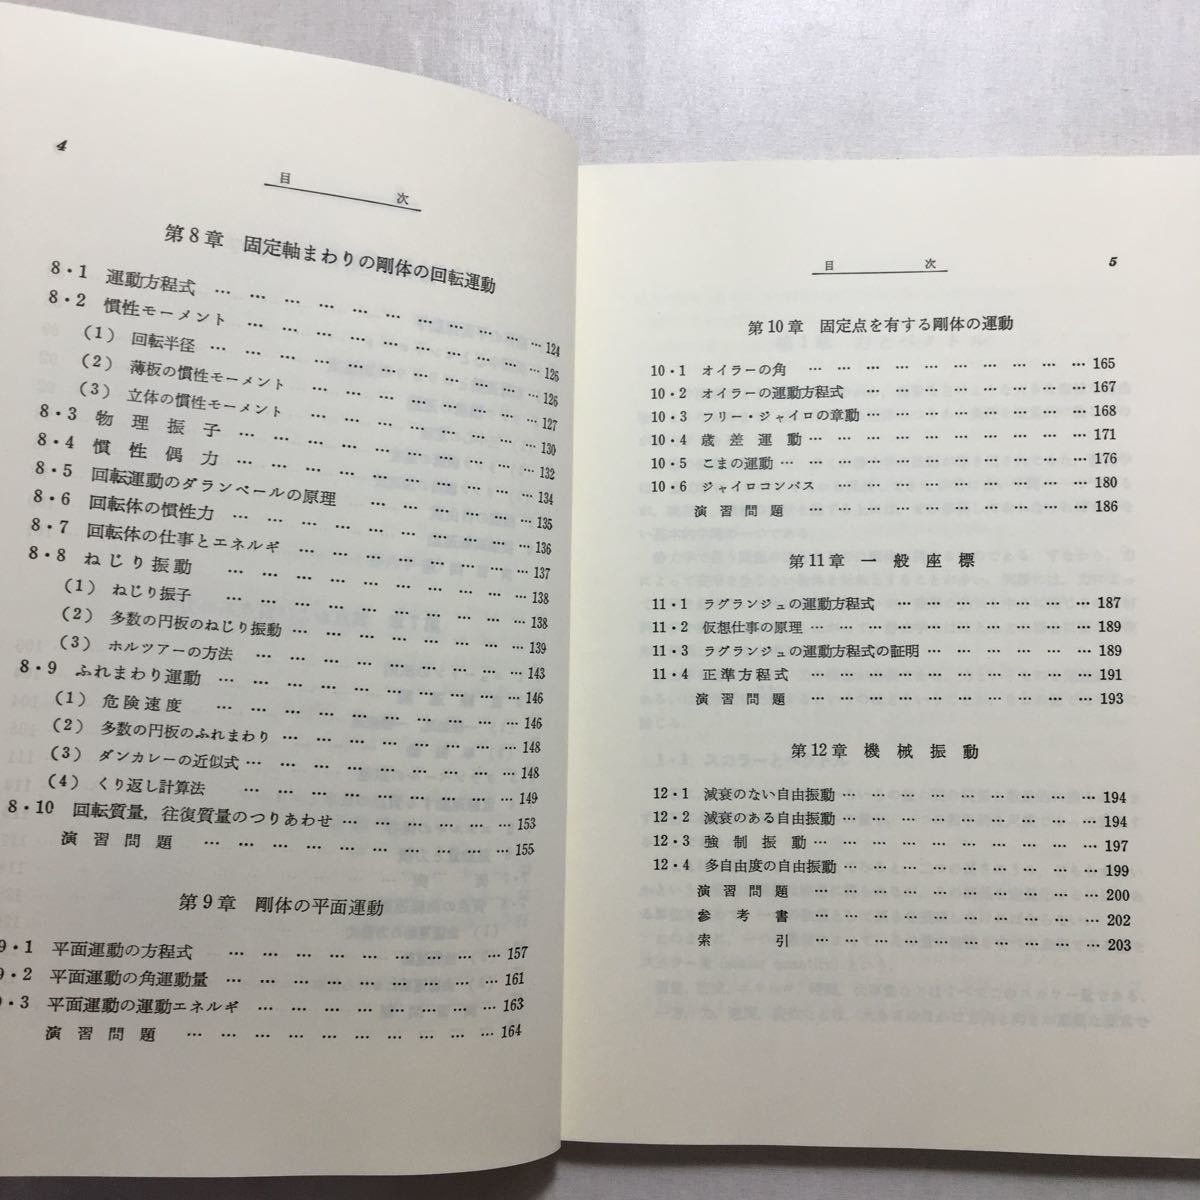 zaa-242♪機械力学 (基礎機械工学全書 (4)) 三浦 宏文 (著)　森北出版　単行本 1997/9/1